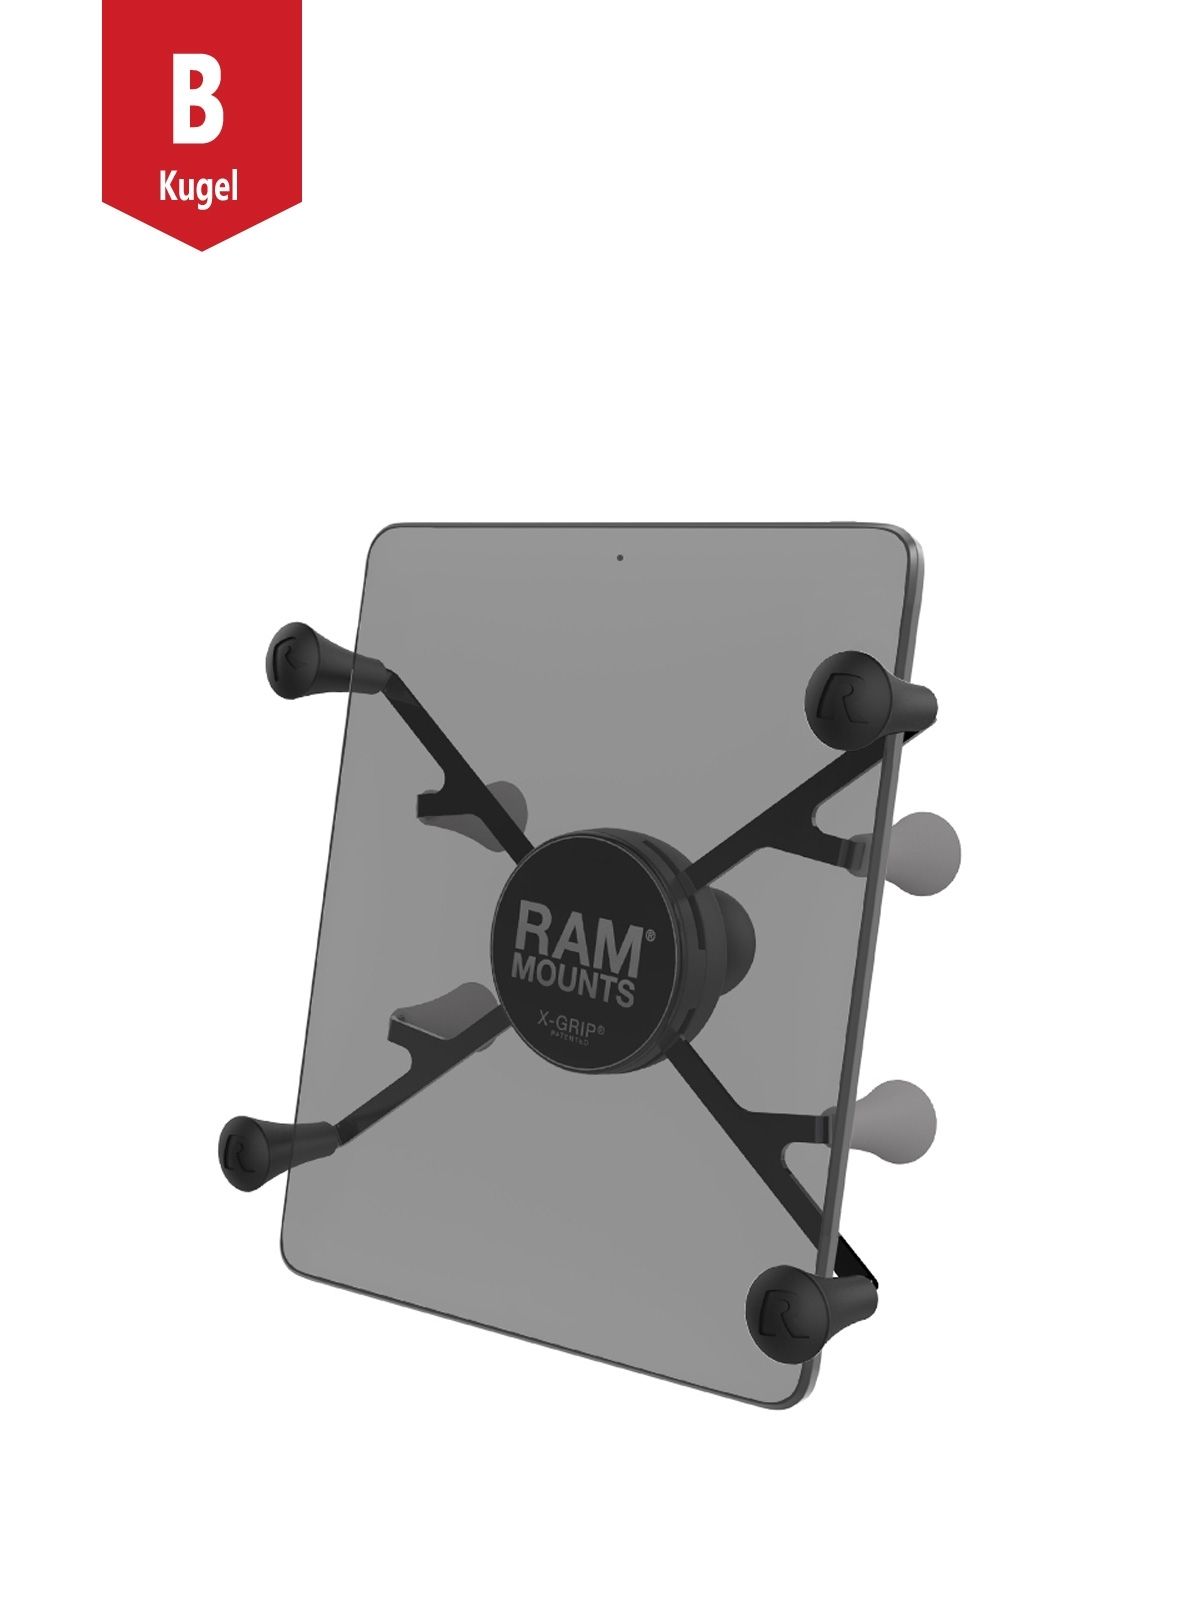 RAM Mounts X-Grip-Halteklammer für Tablets (7-8 Zoll) - B-Kugel (1 Zoll)